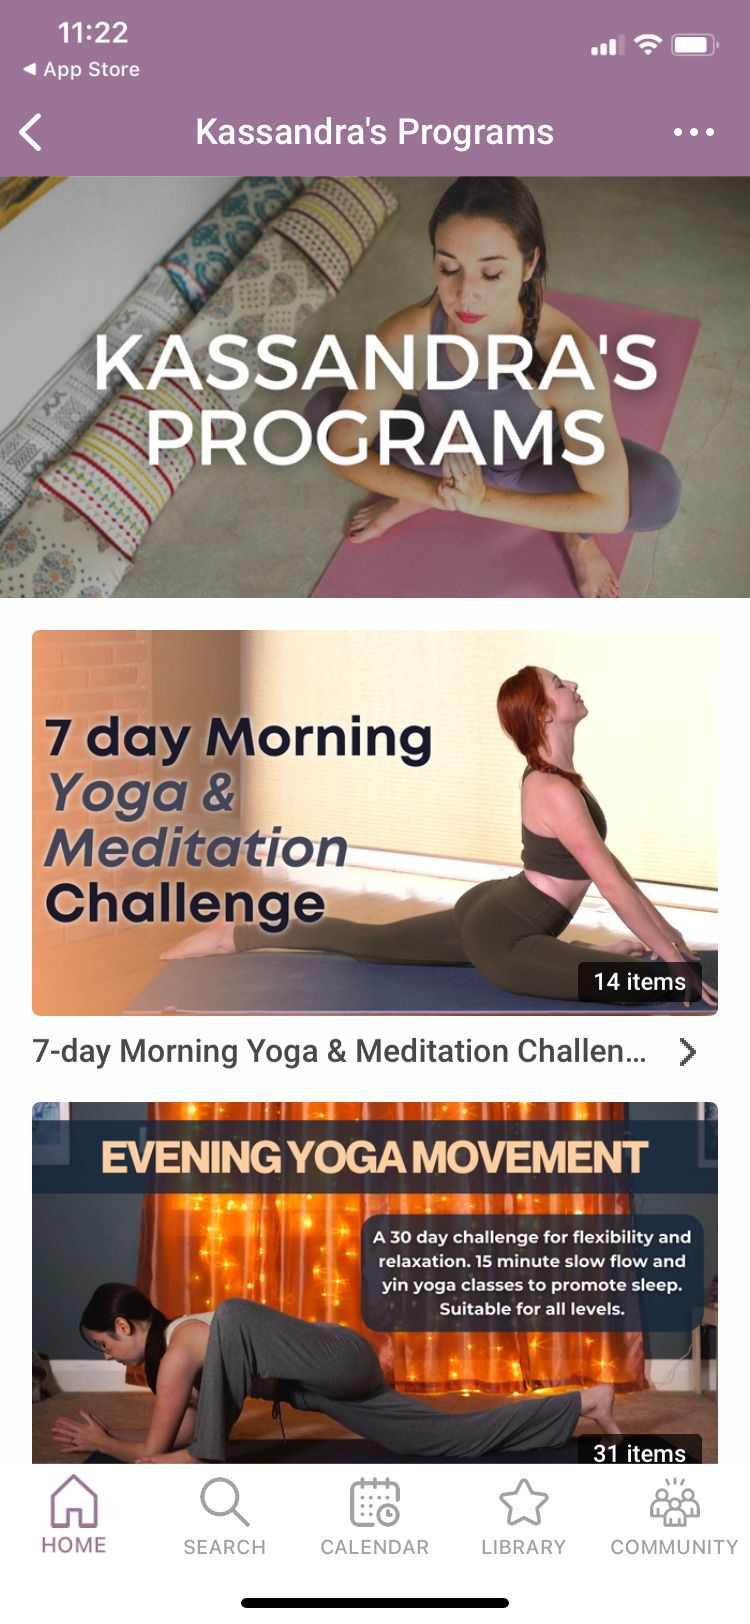   Programas de Yoga com Kassandra